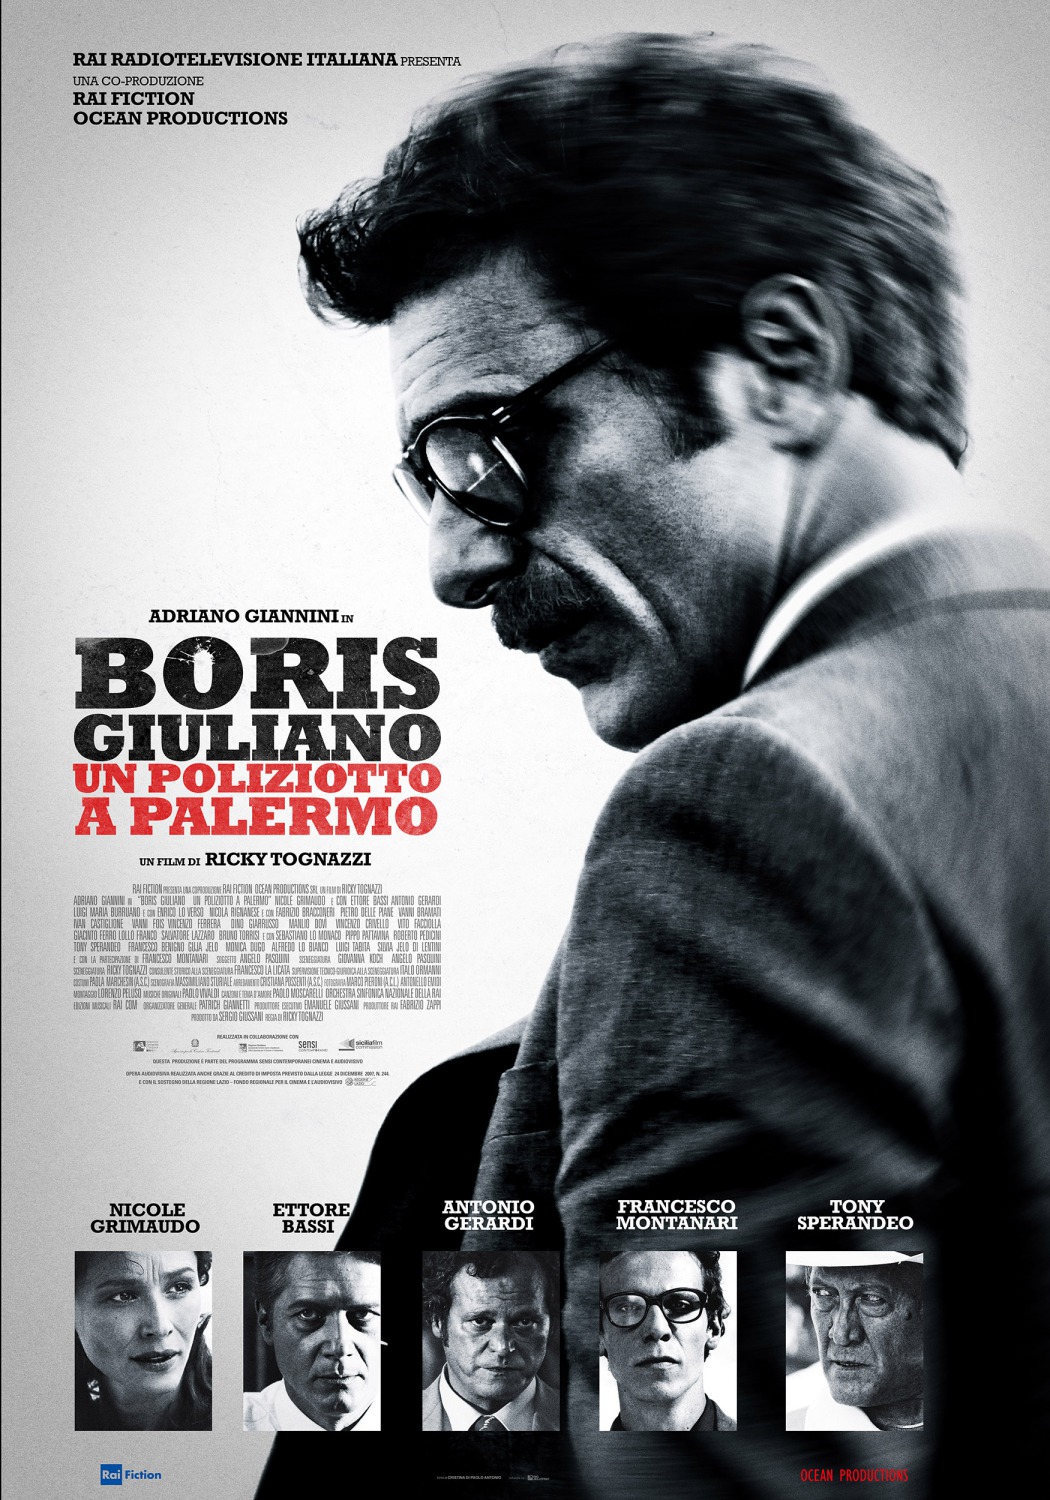 Extra Large Movie Poster Image for Boris Giuliano - Un poliziotto a Palermo 